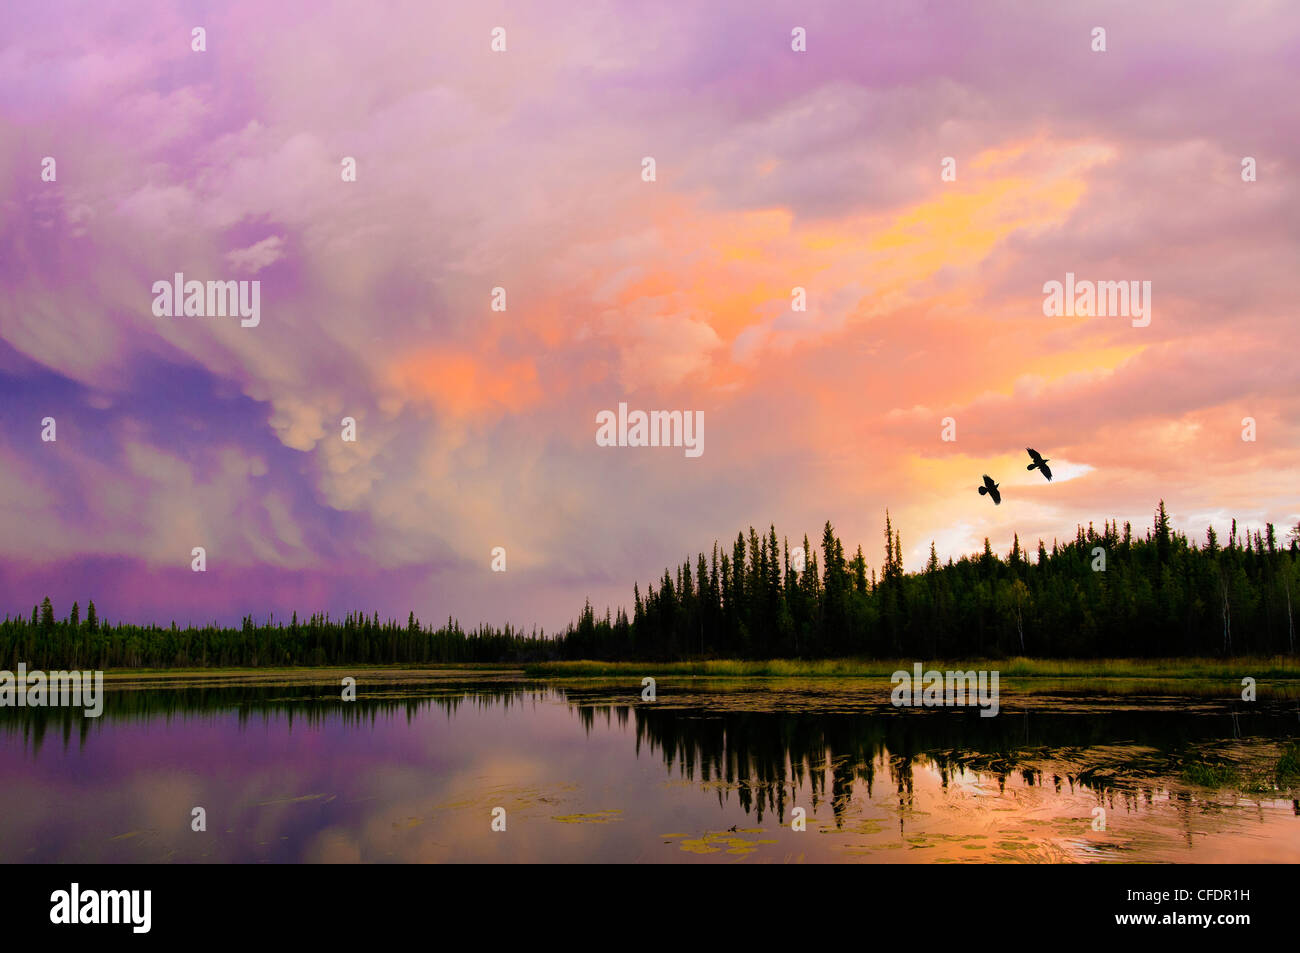 Los cuervos (Corvus corax) volando en un lago al atardecer boreal, alrededores Yellowknife, Territorios del Noroeste y el norte de Canadá Foto de stock